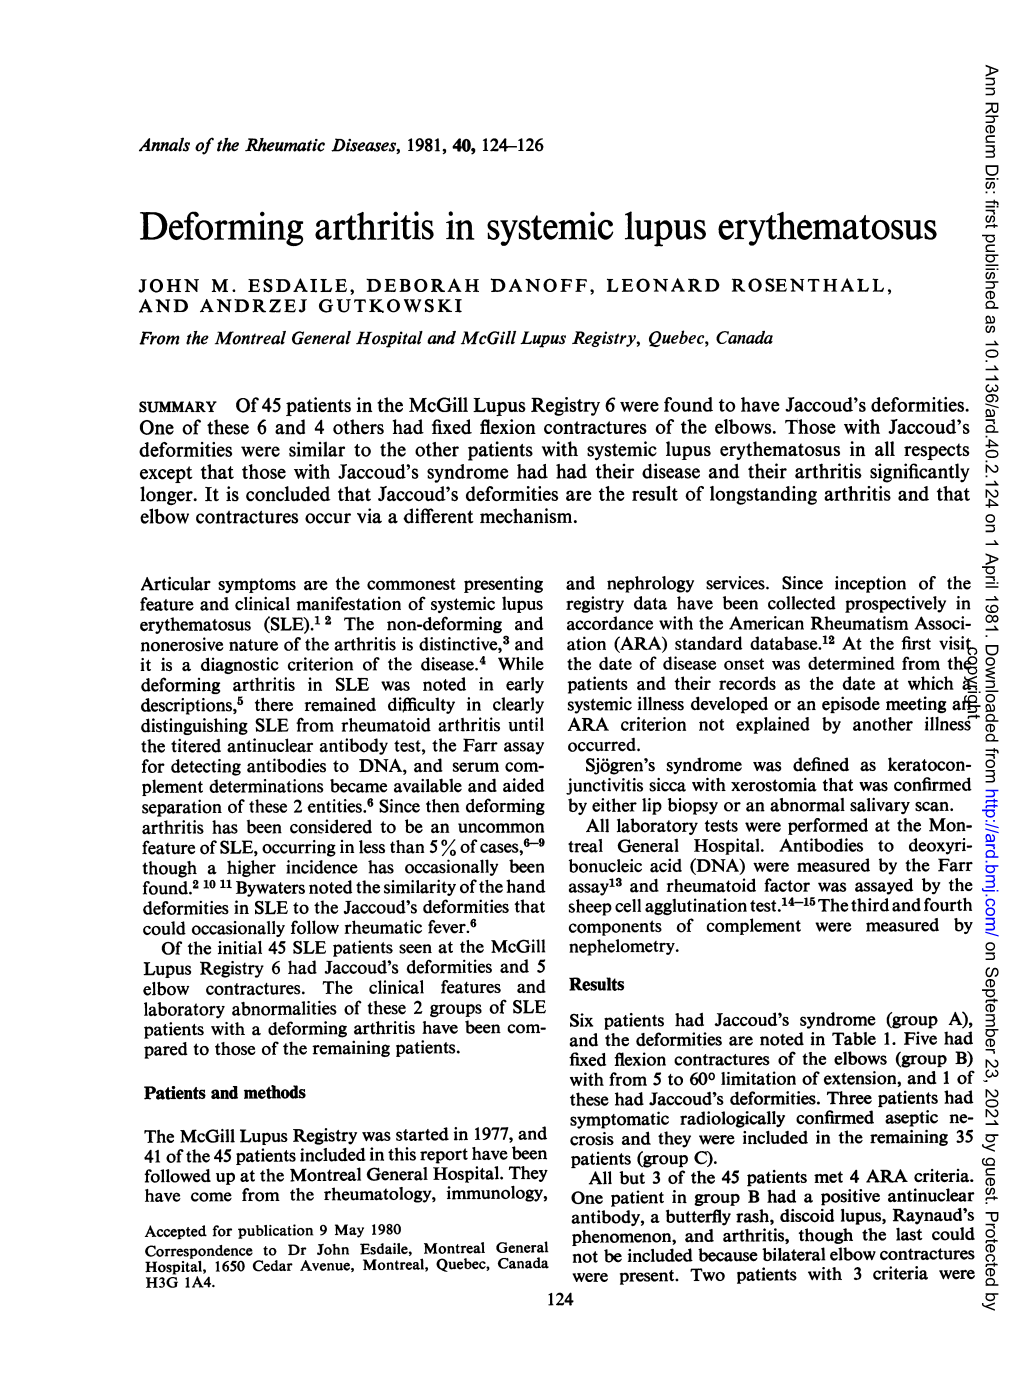 Deforming Arthritis in Systemic Lupus Erythematosus